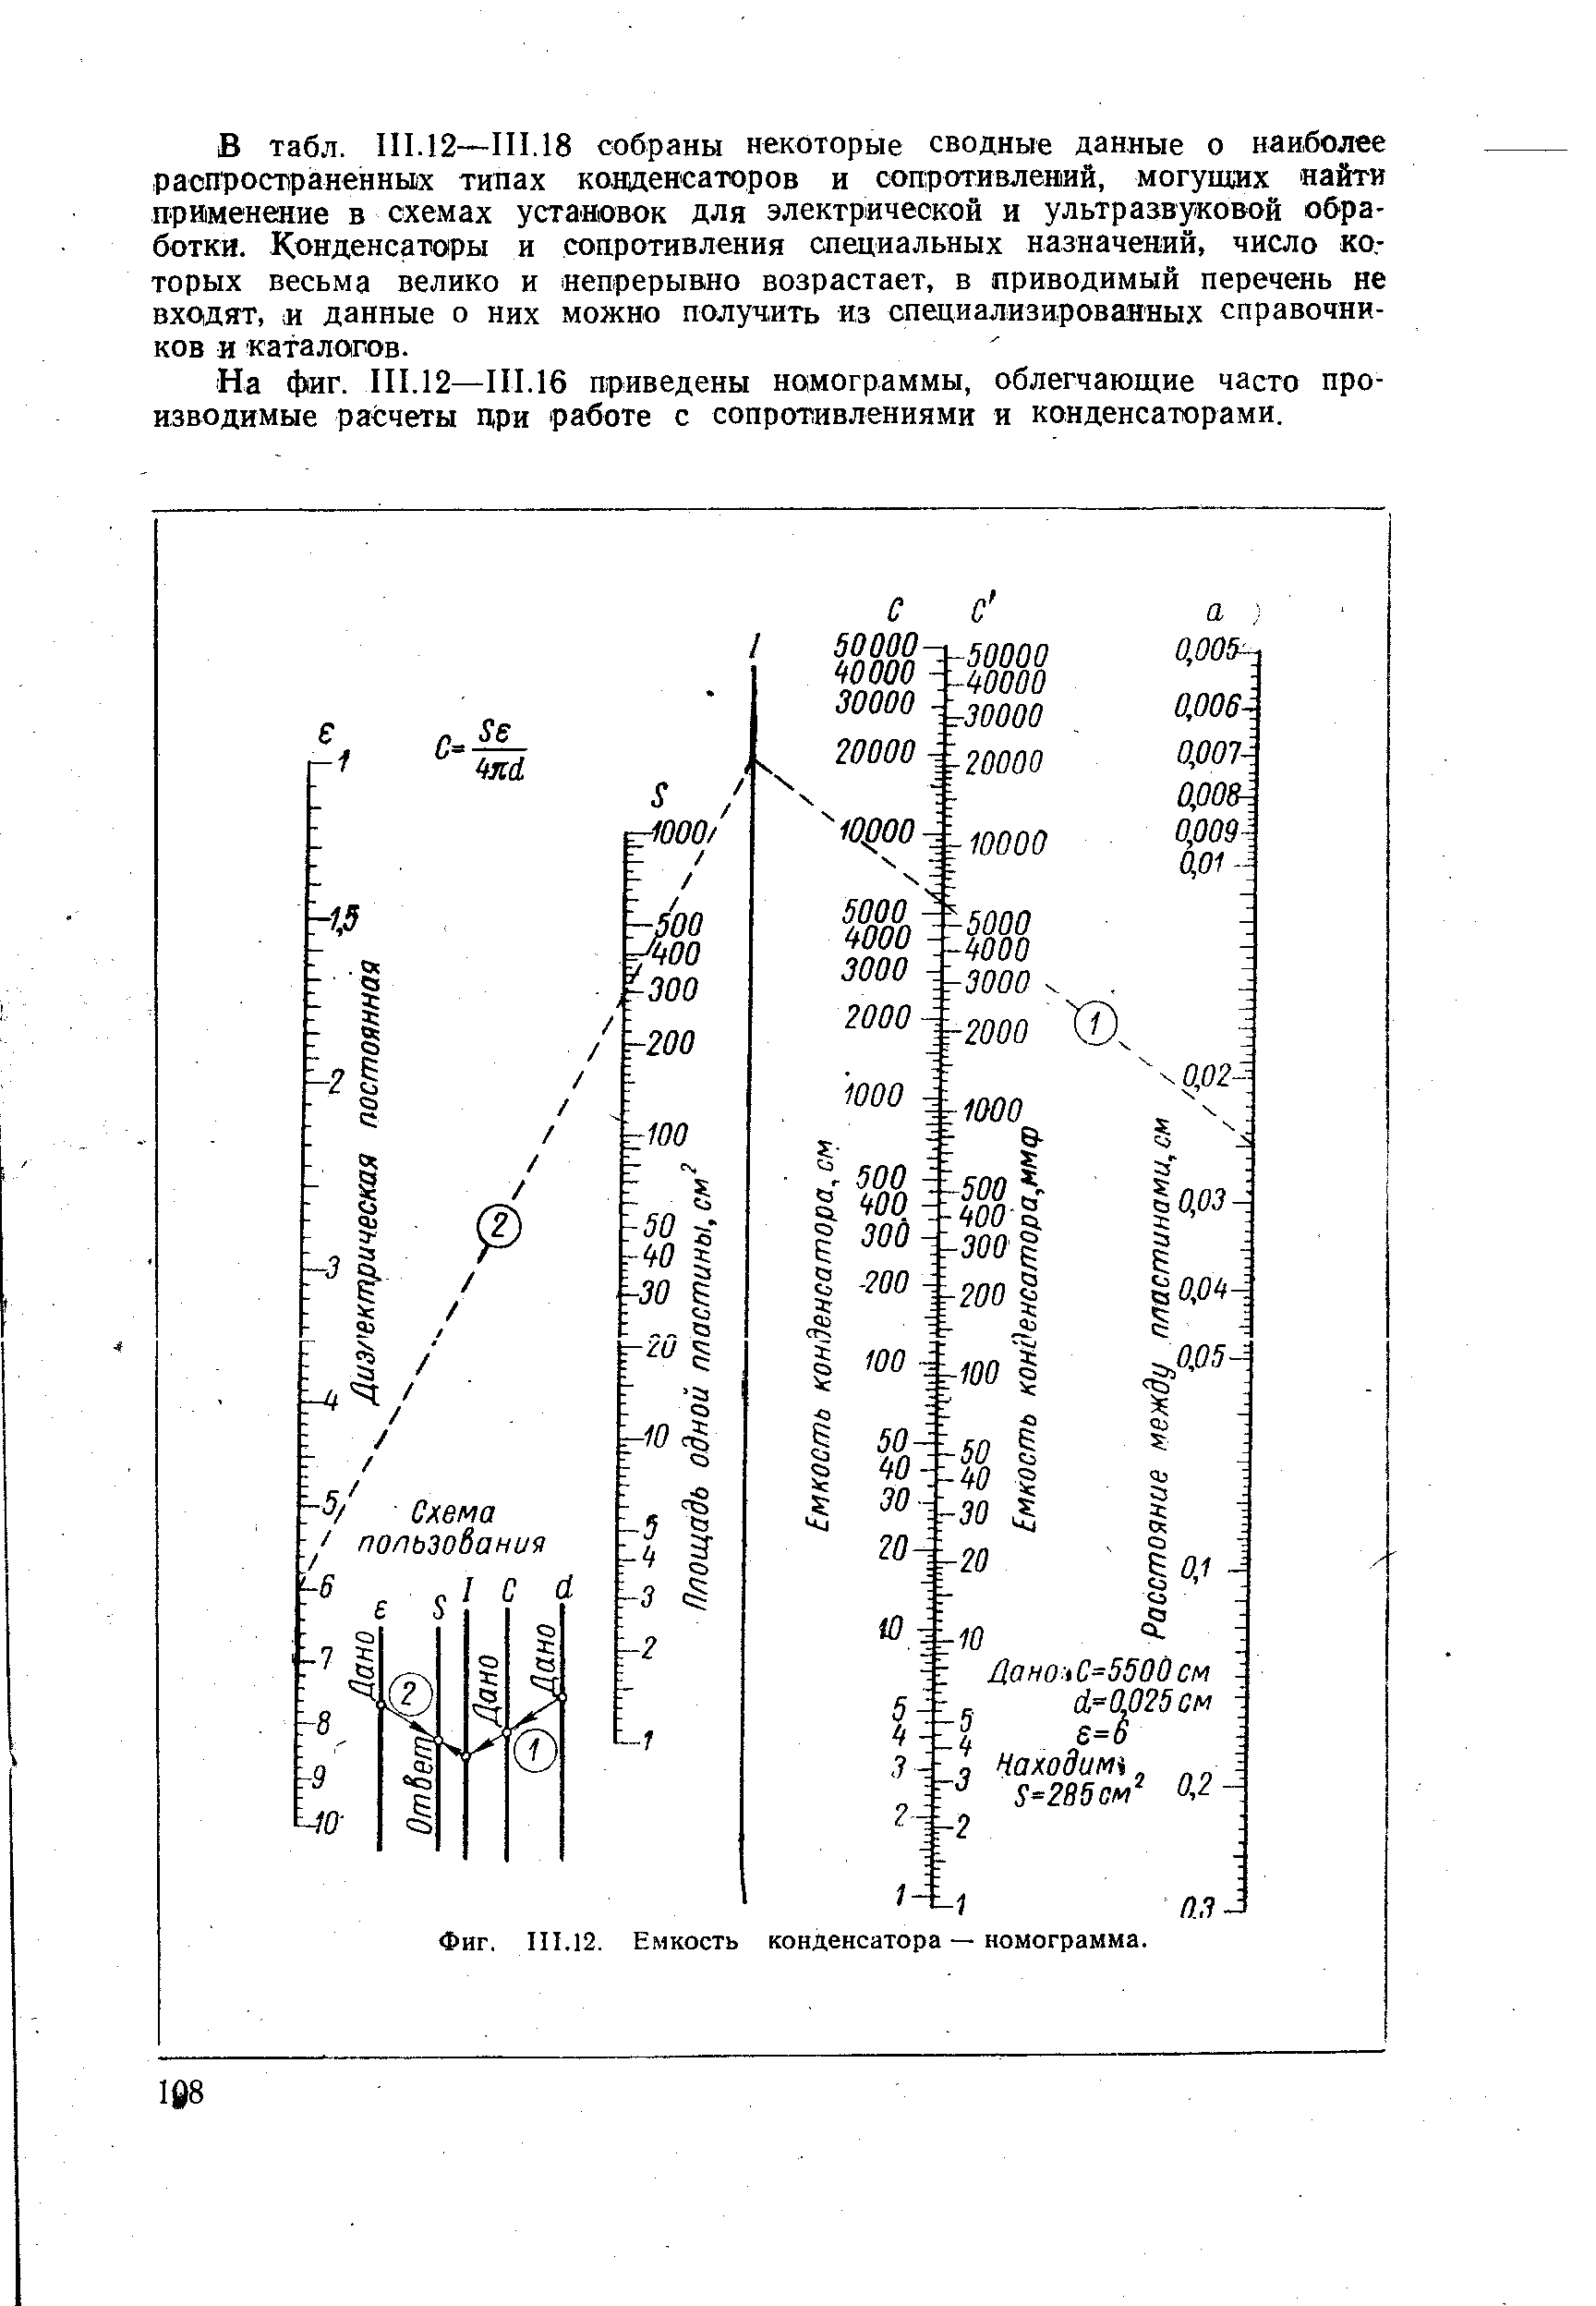 На фиг. III.12—111.16 приведены номограммы, облегчающие часто производимые расчеты цри работе с сопротивлениями я конденсаторами.
